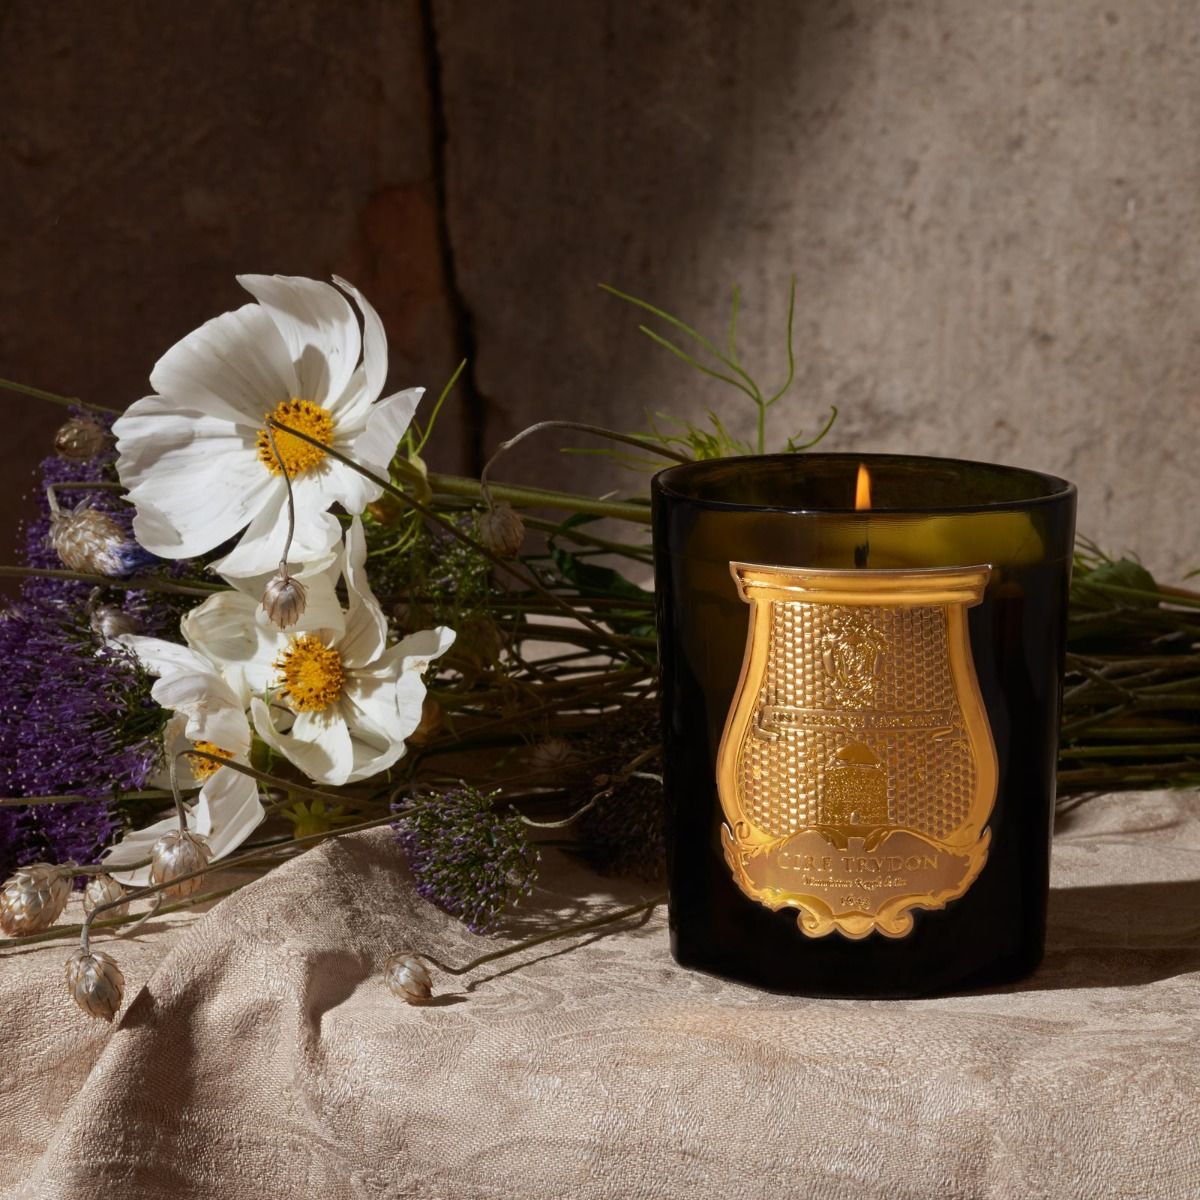 Trudon - Abd el Kader (Moroccan Mint Tea) Candle